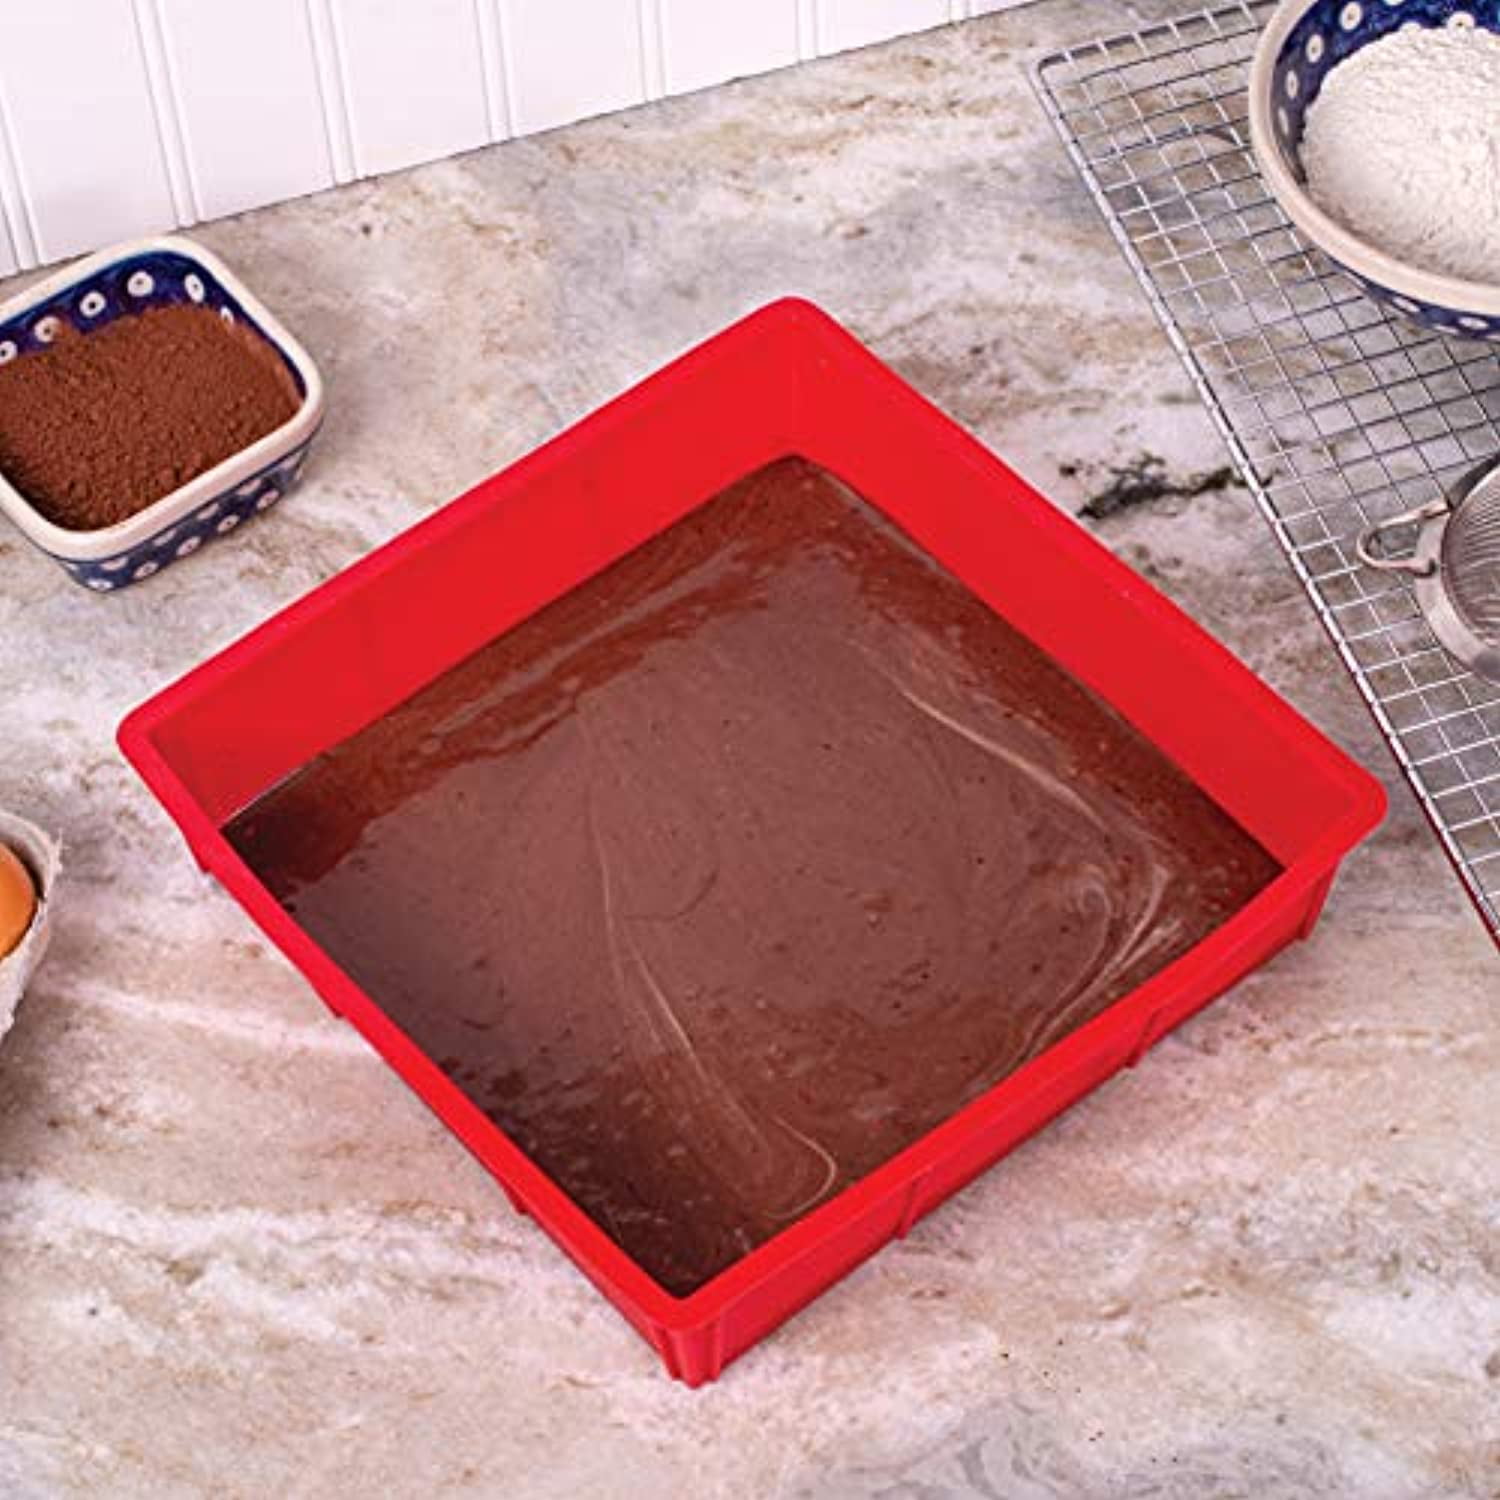 Set of 2 KitchenAid Silicone Cake Pans 9 Inch Round Red Baking Pans 9”  Bakeware